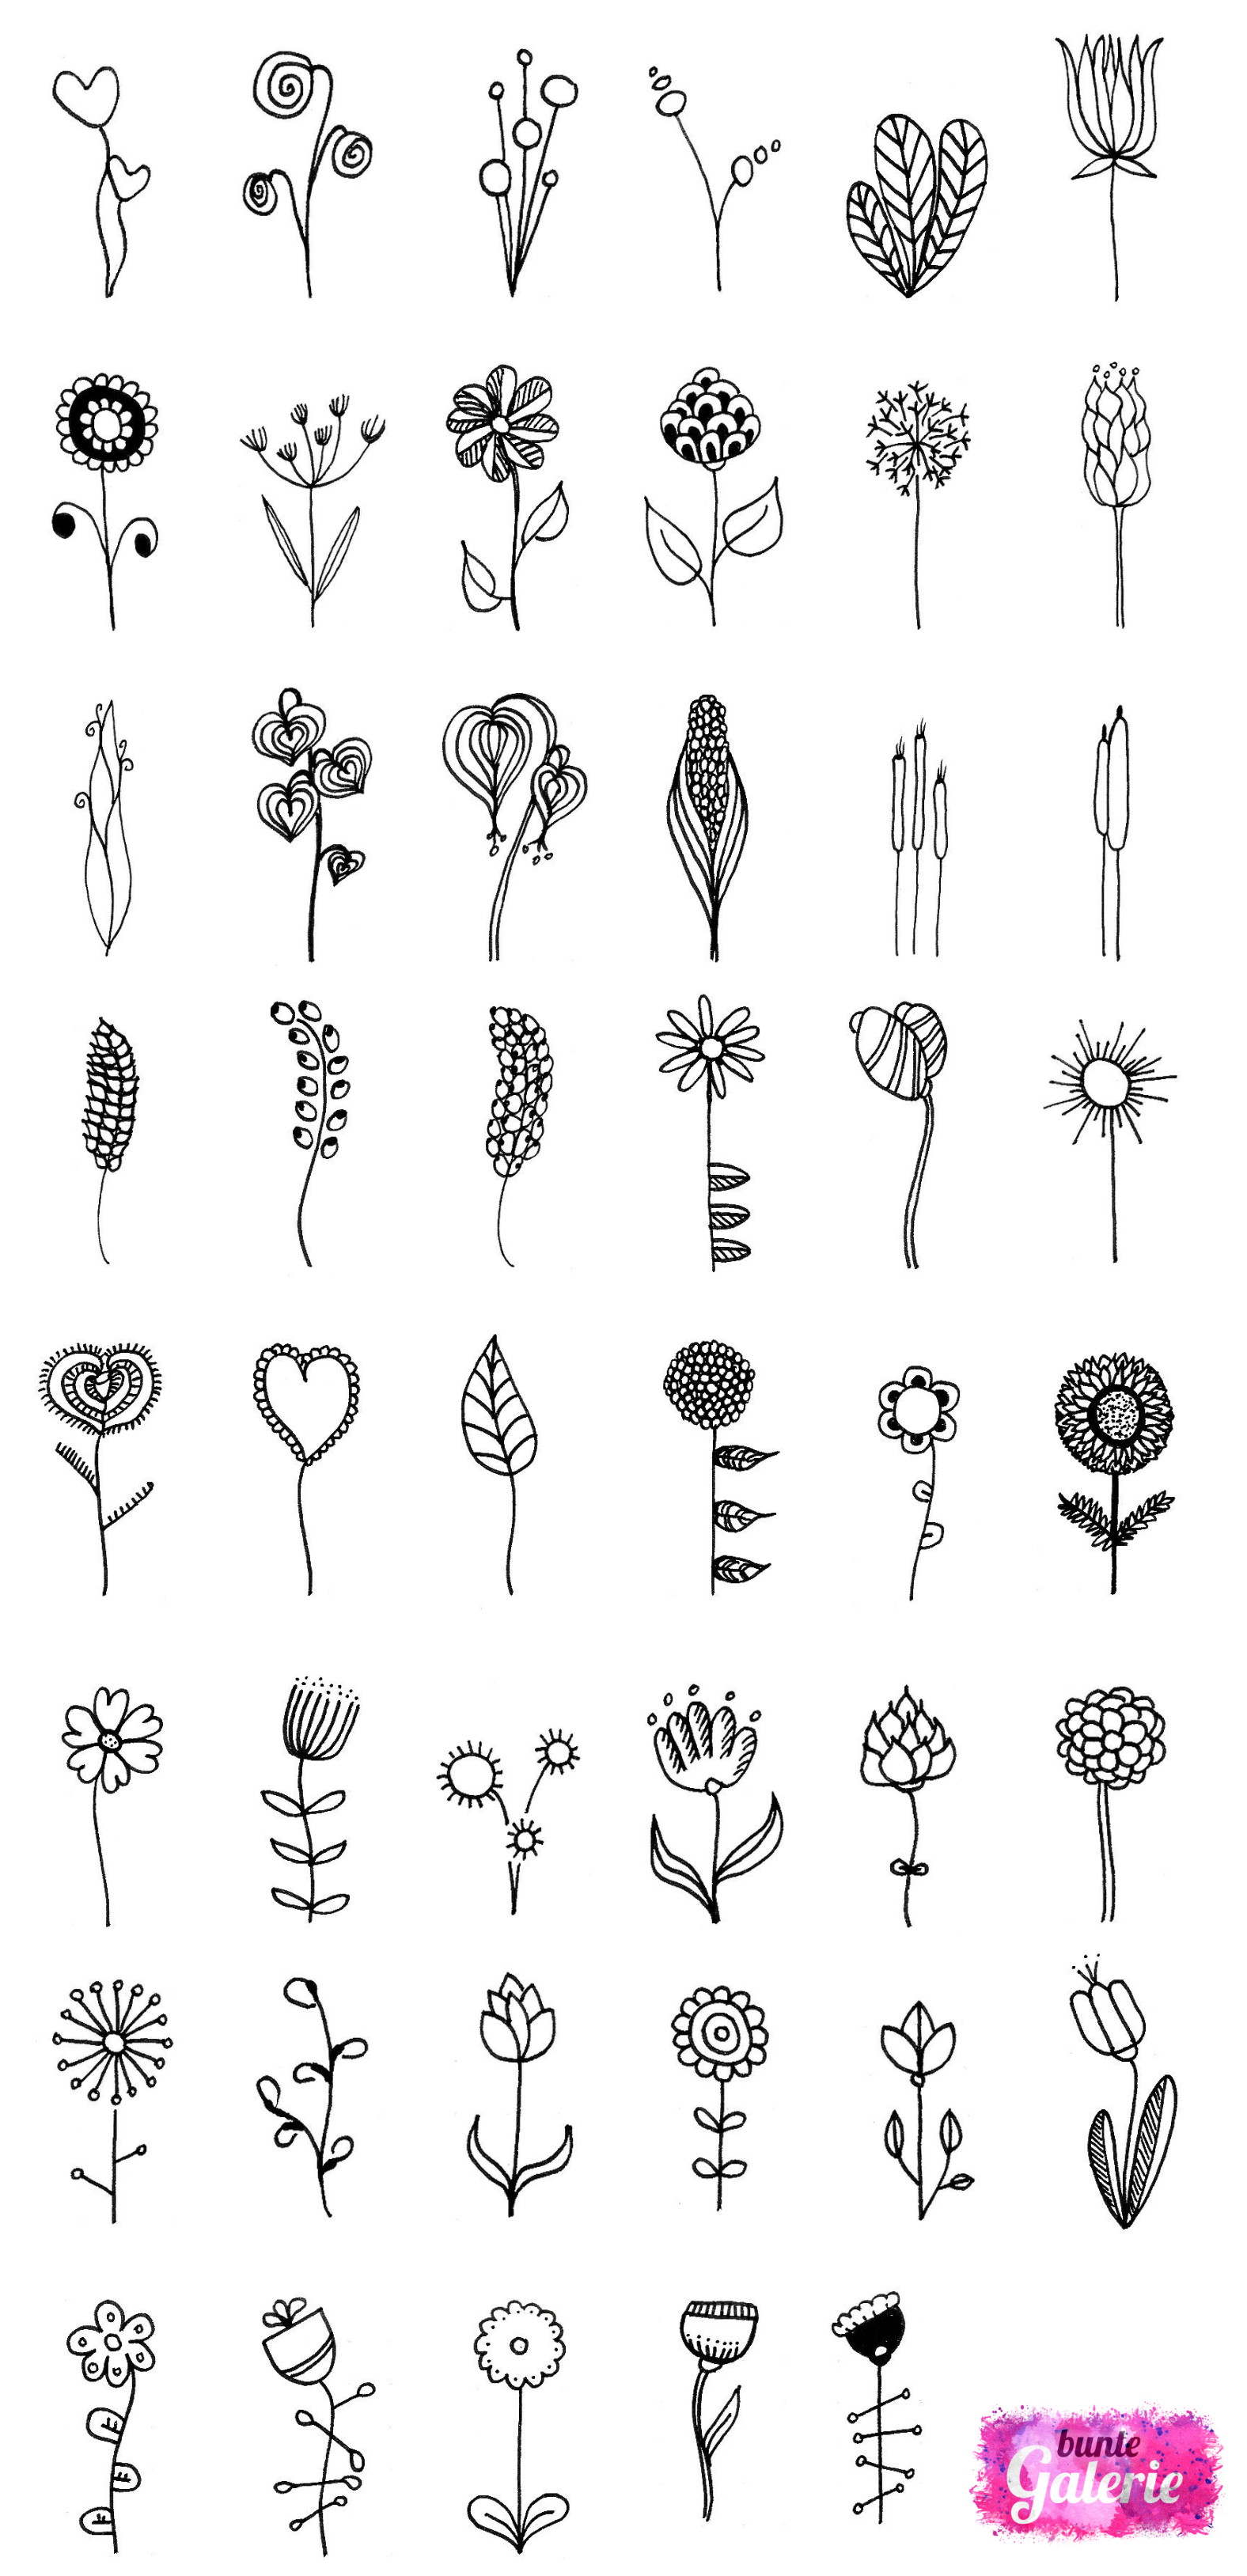 Doodle Blumen zur Inspiration bei Deinen eigenen Zeichnungen